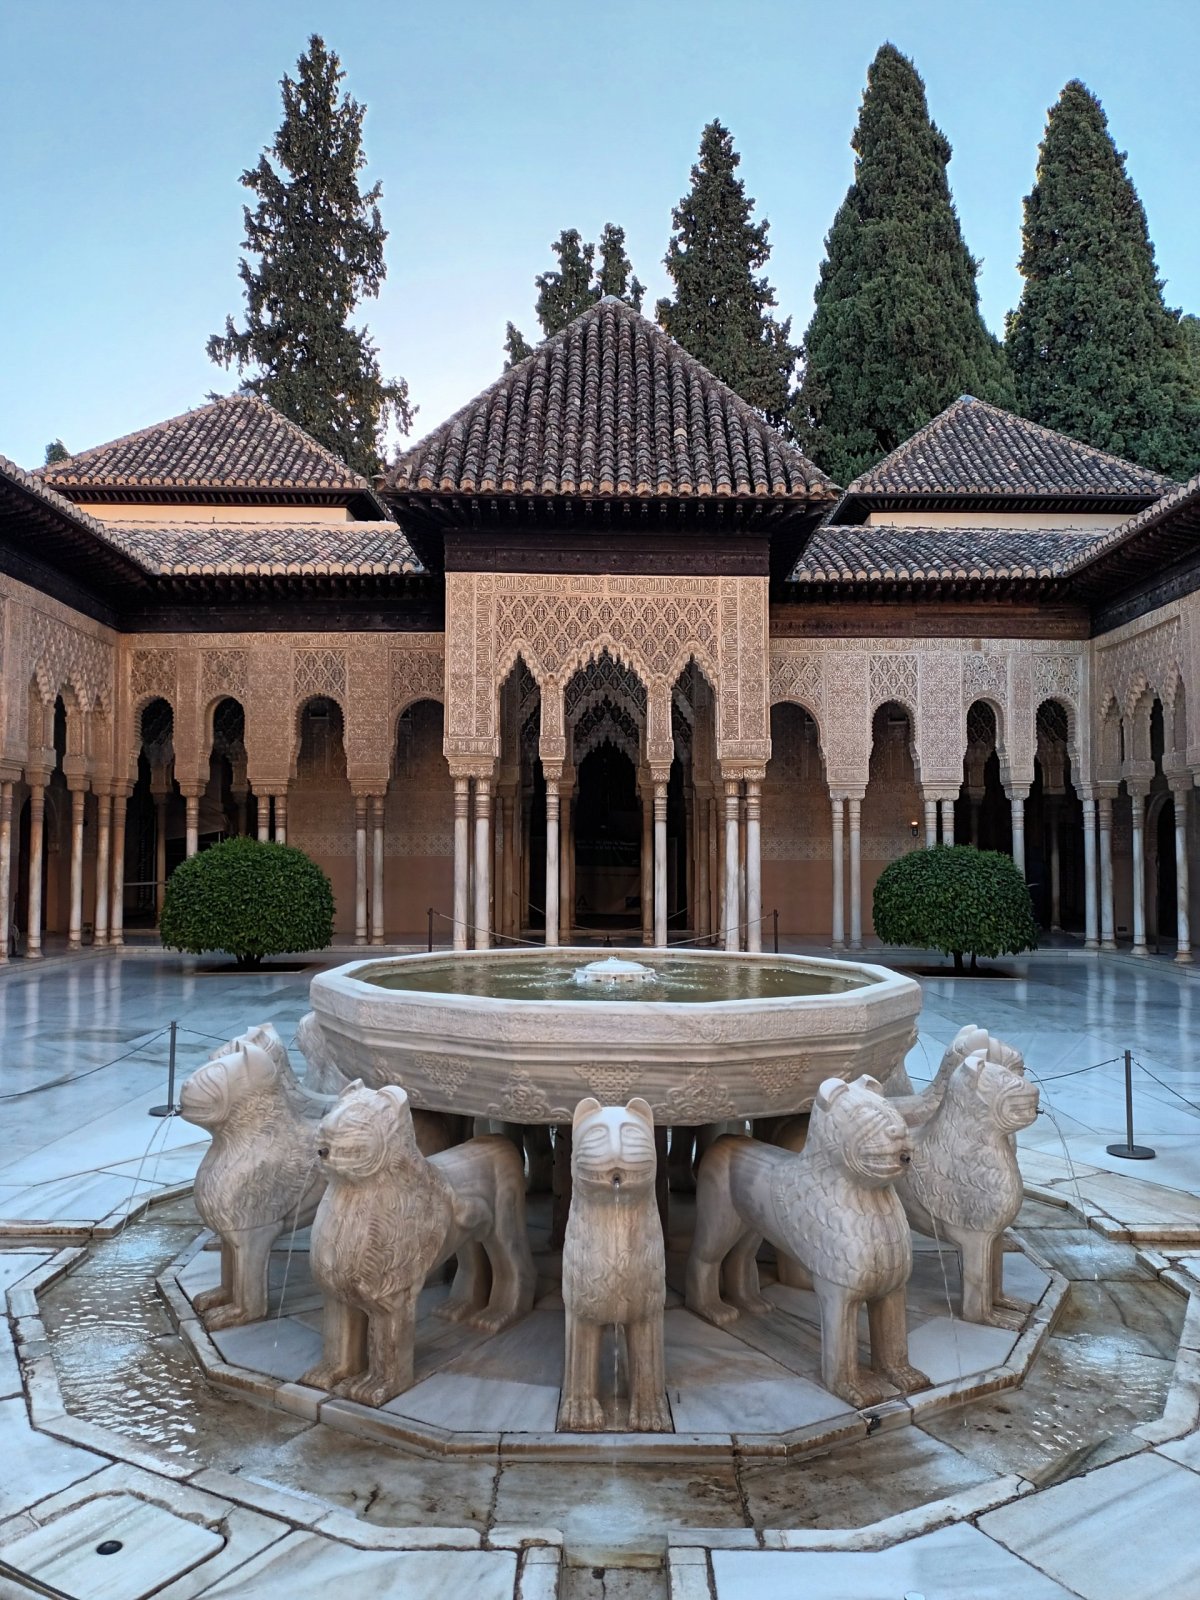 Patio de los Leones v Nasridském paláci